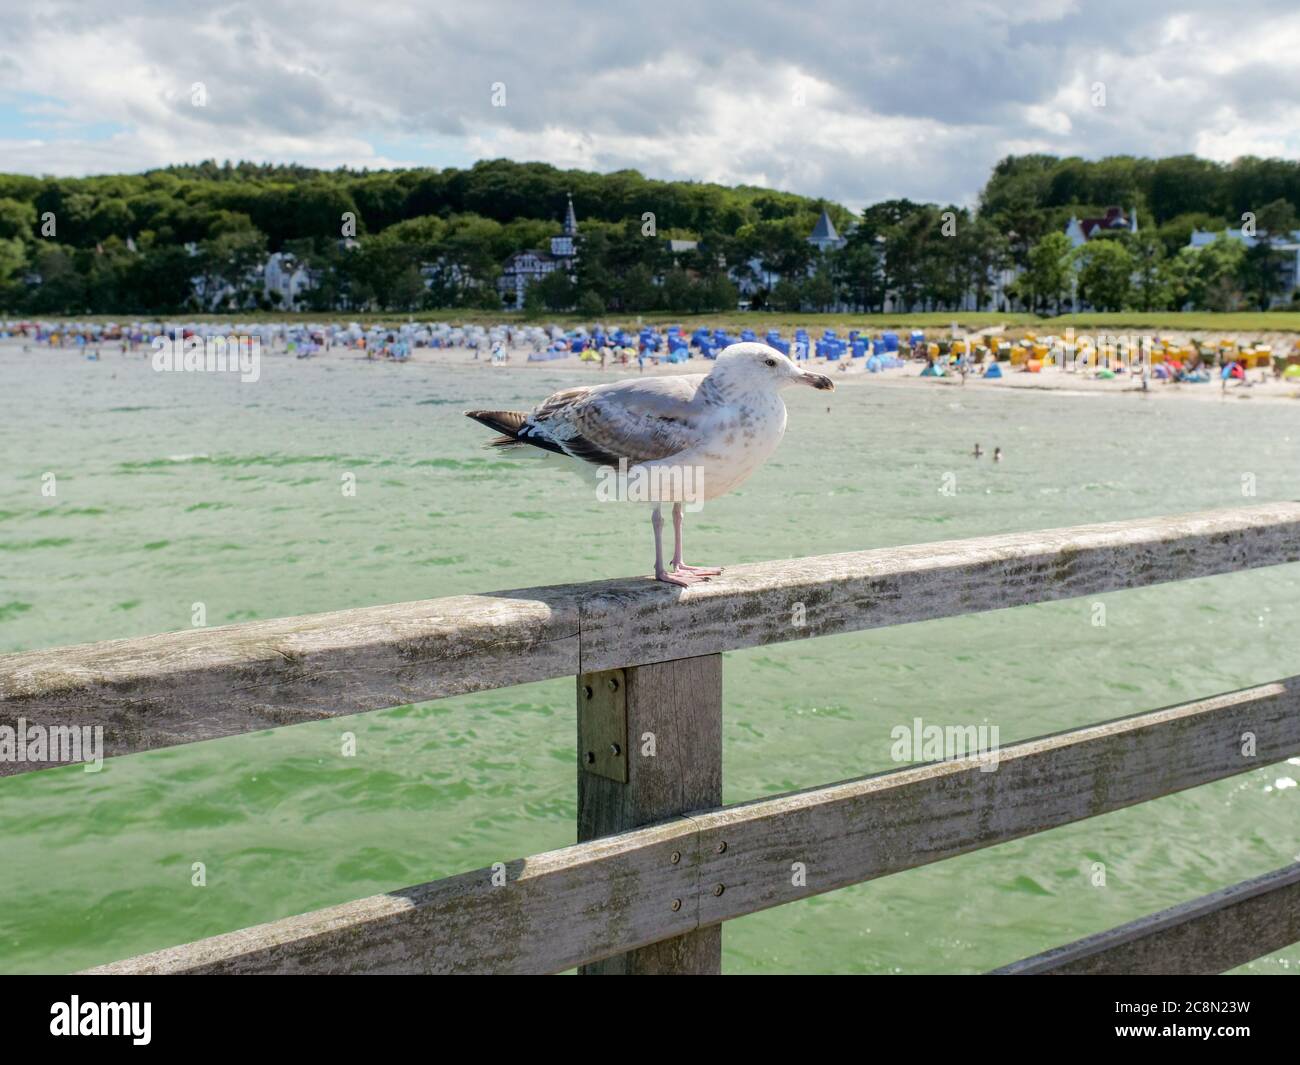 weiß-graue Möwe auf der Seebrücke in Binz wartend und beobachtend Eismöwe Ostsee Insel Rügen mit Strand und Touristen im Hintergrund Foto de stock